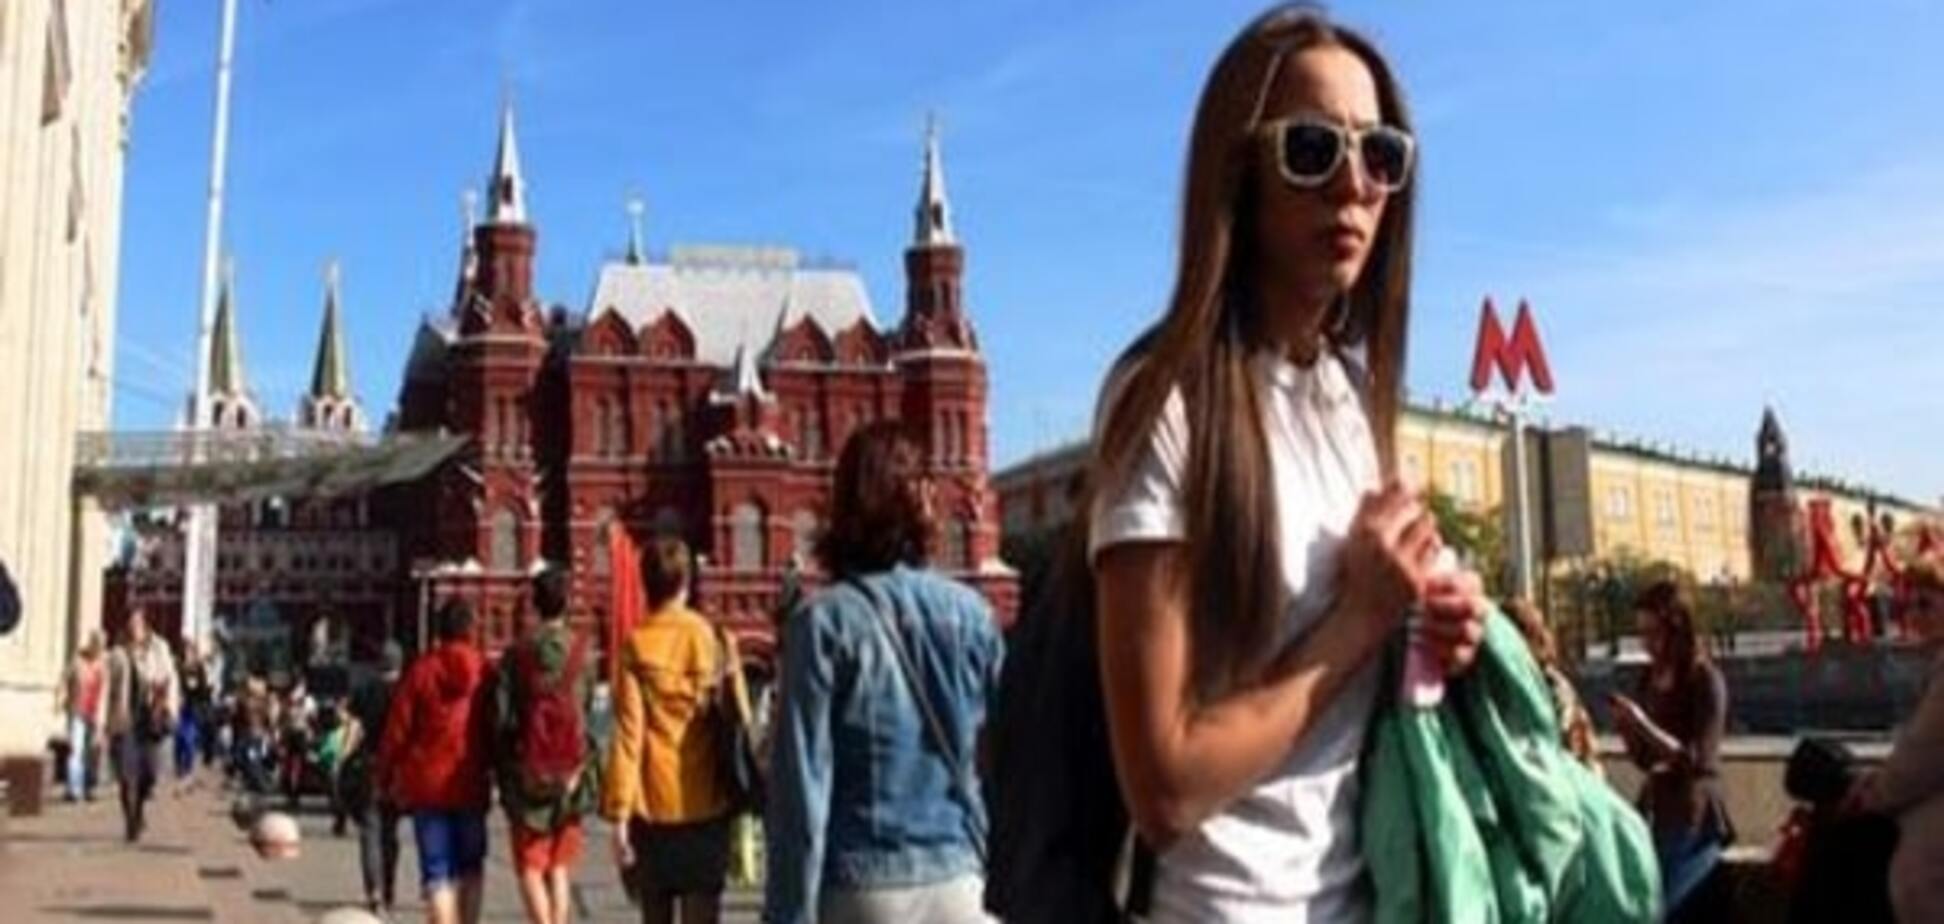 Россияне хотят жить как в Европе, но не следовать ее нормам - социолог